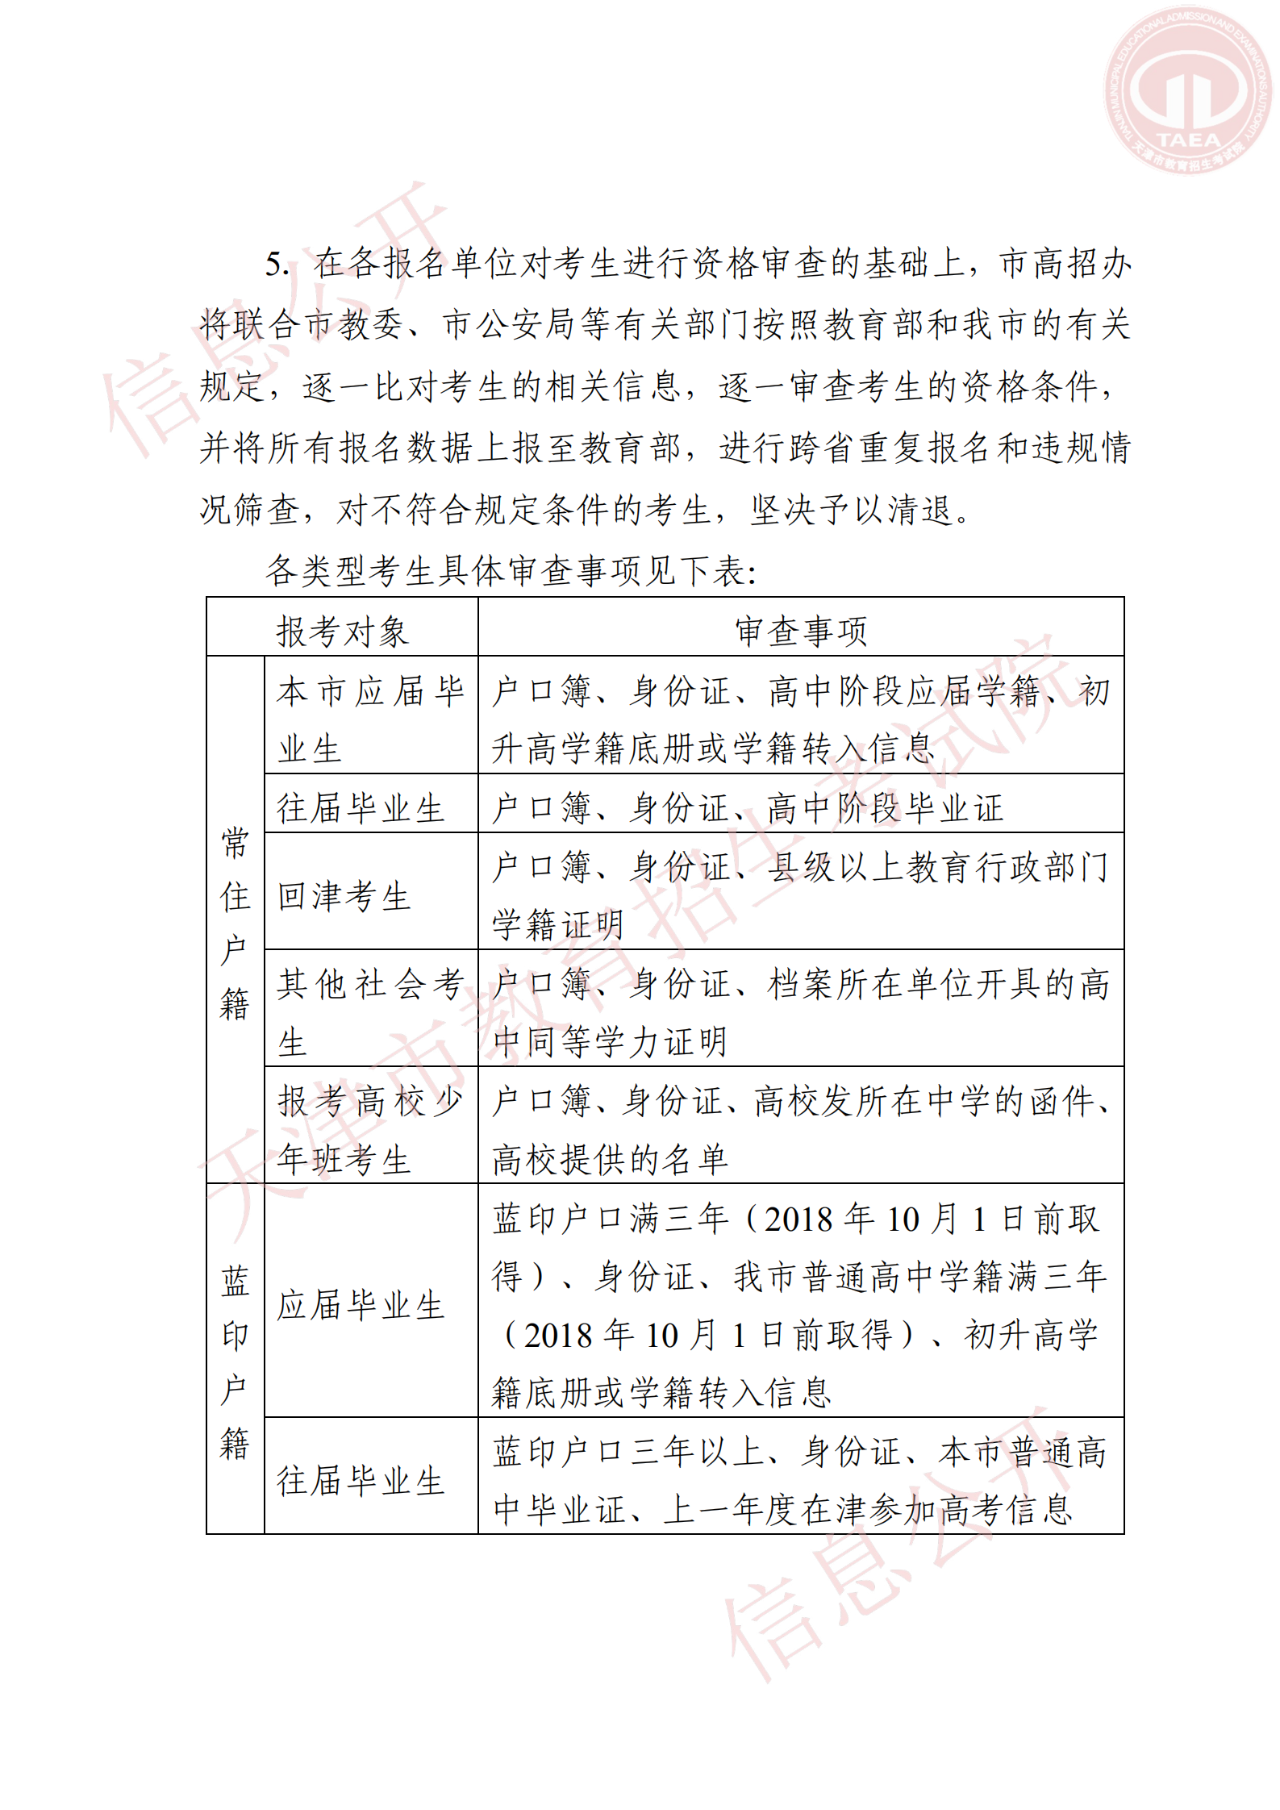 天津市招委关于做好2021年天津市普通高等学校招生考试报名工作的通知